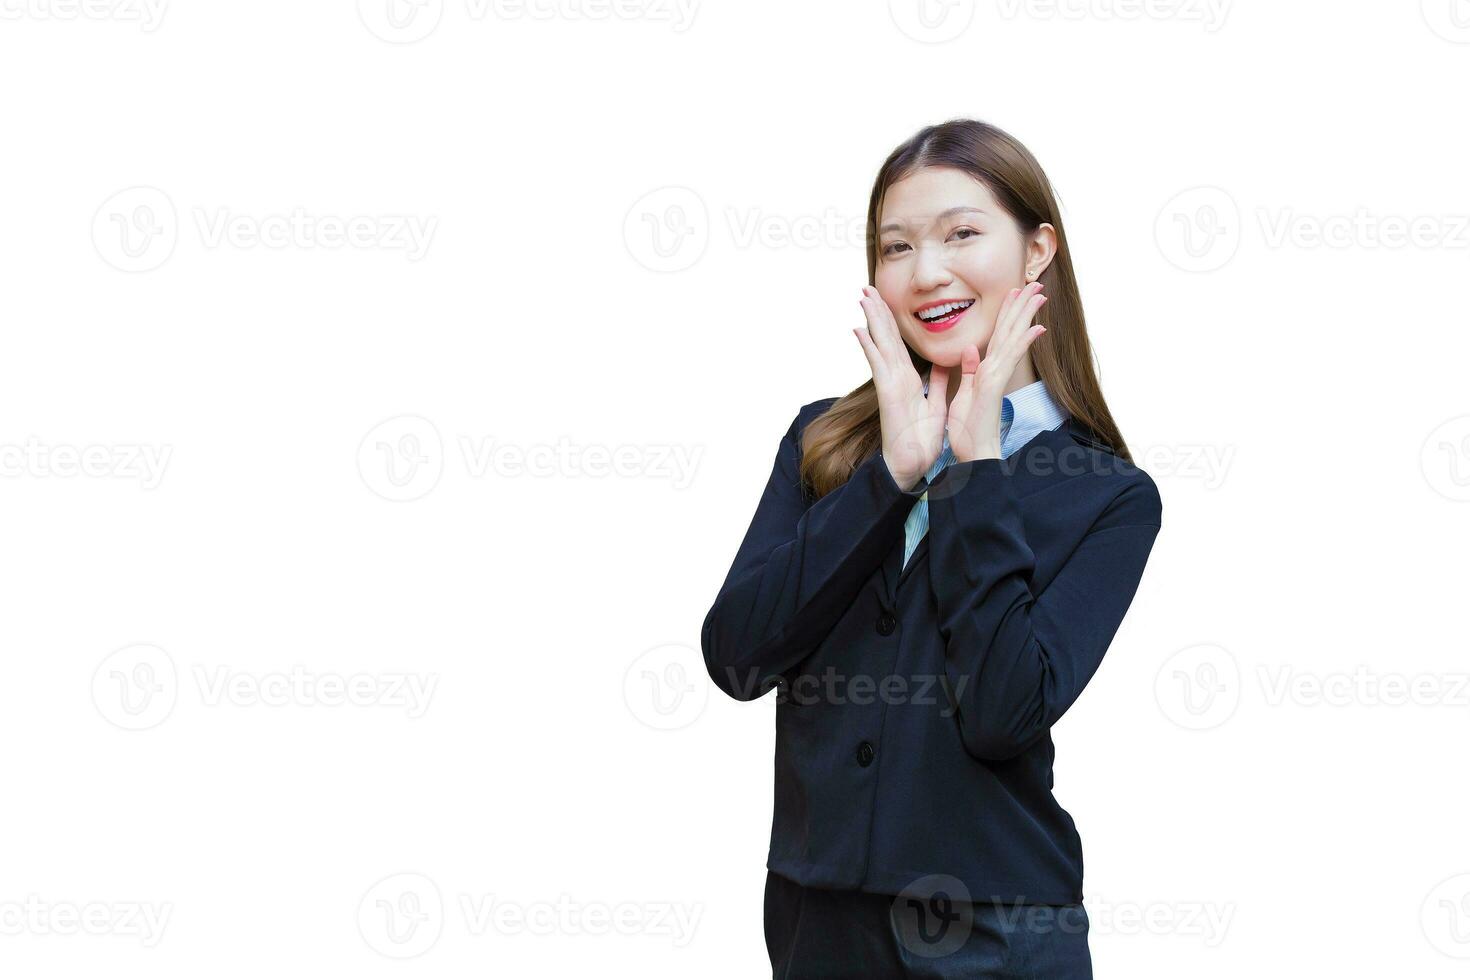 professioneel jong Aziatisch werken vrouw wie heeft lang haar- draagt zwart formeel pak met blauw overhemd terwijl ze glimlachen gelukkig terwijl geïsoleerd wit achtergrond. foto